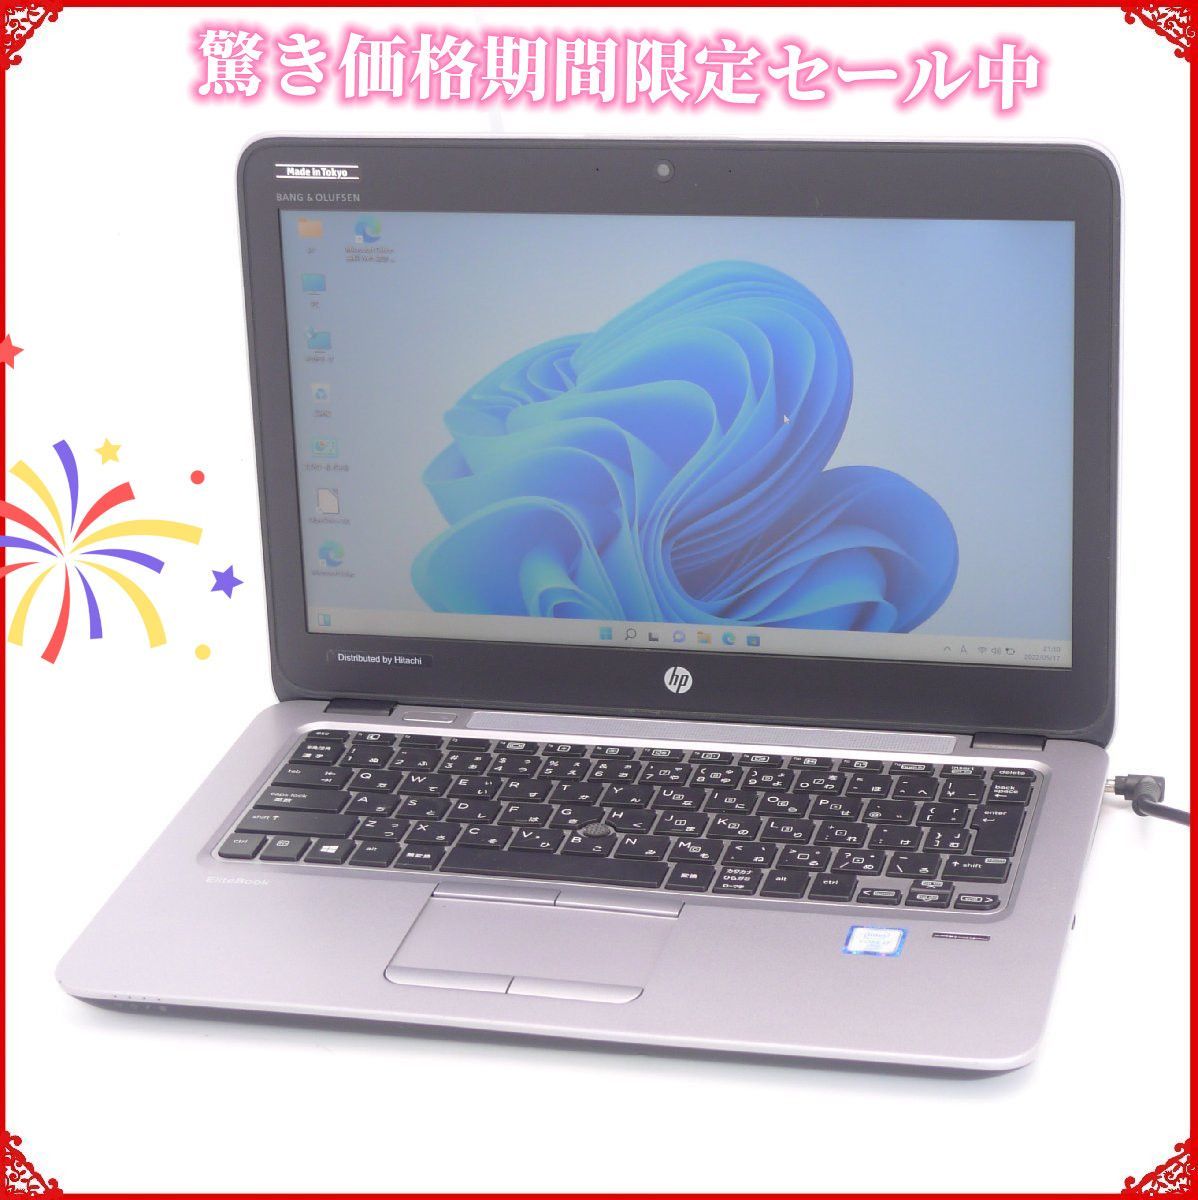 驚き価格 送料無料 日本製 新品SSD512GB 12.5型 ノートPC HP 820 G3